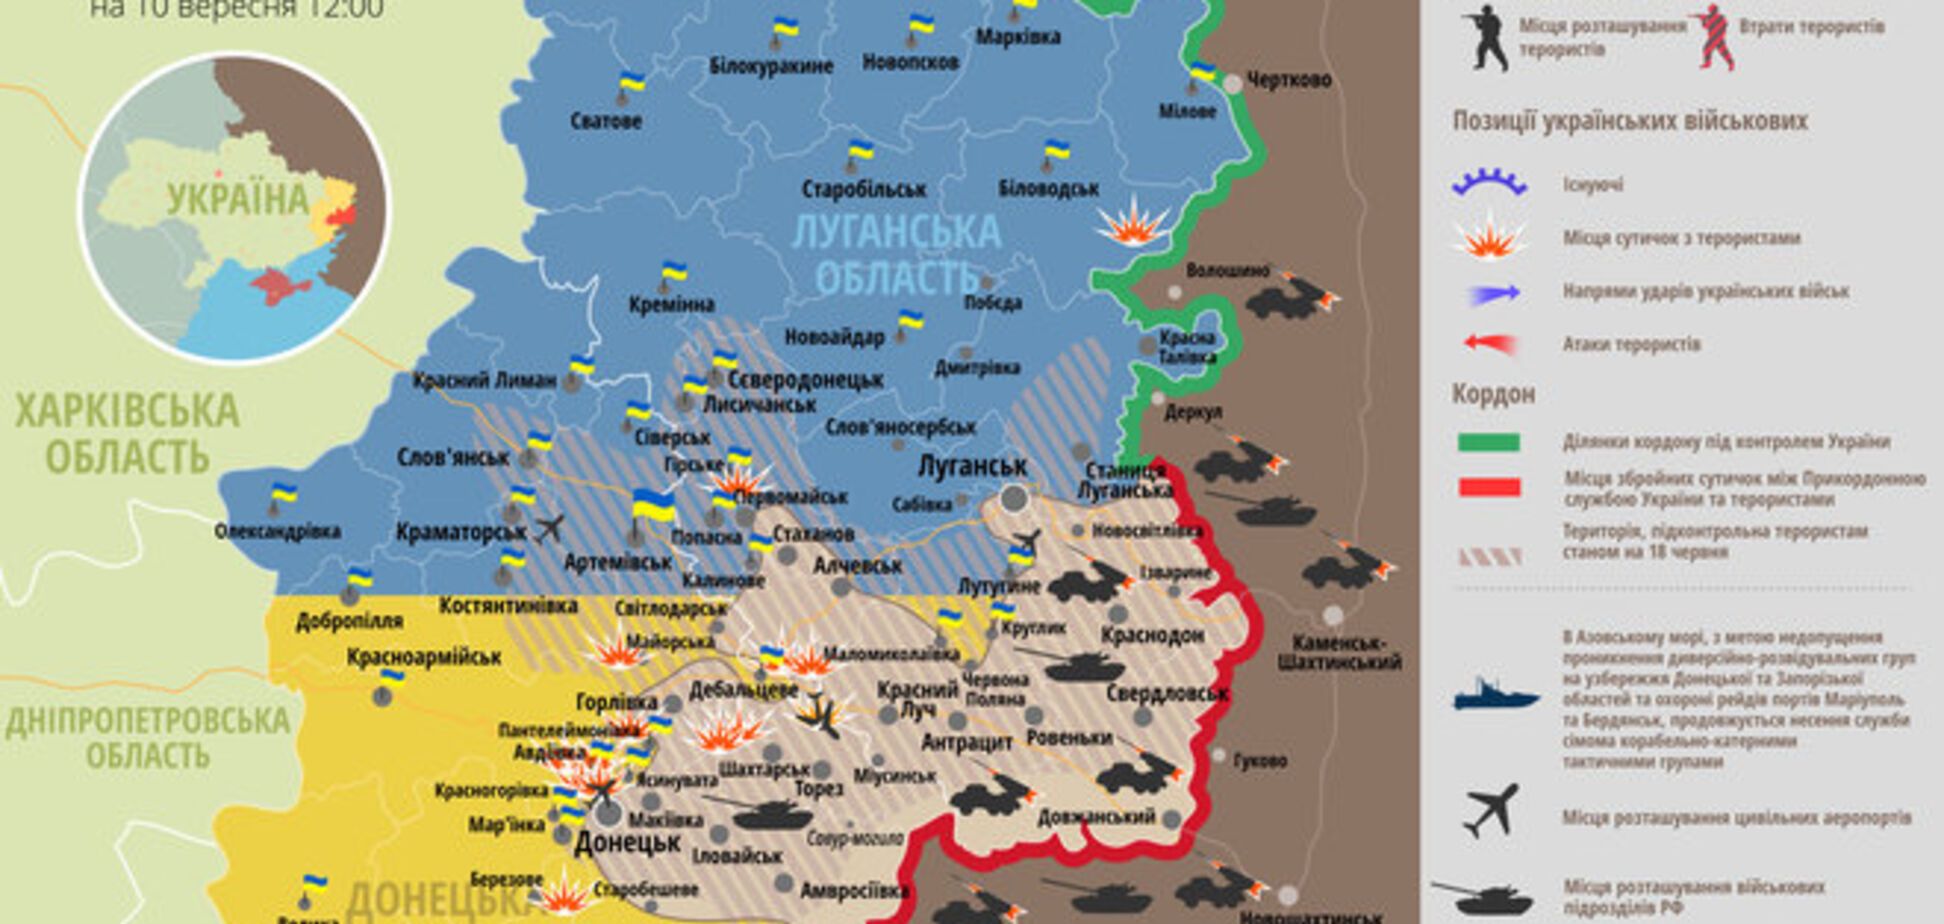 Опублікована мапа військових дій на Донбасі